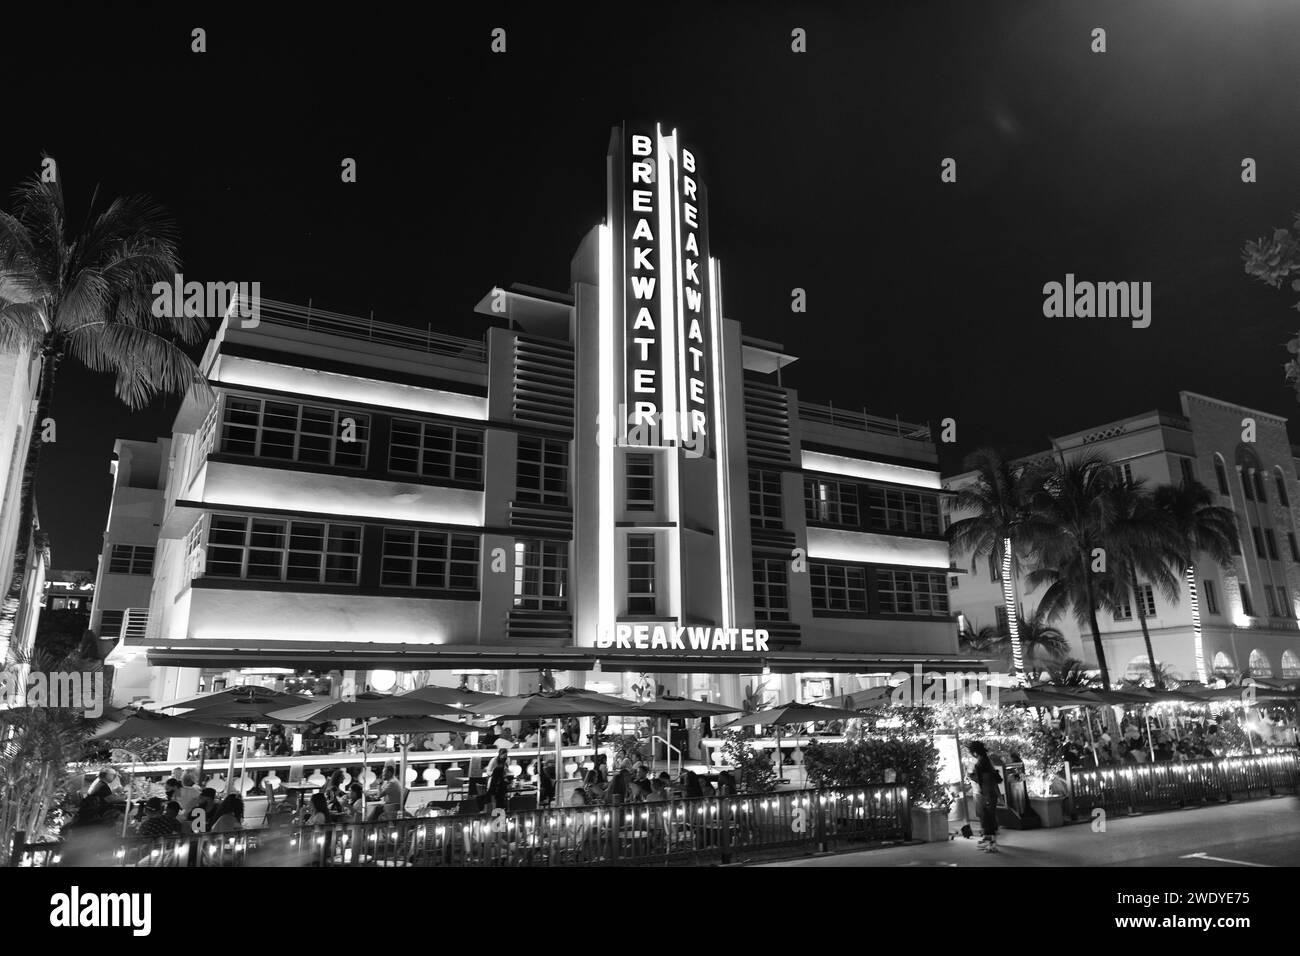 Miami, Floride États-Unis - 16 avril 2021: Miami South Beach Ocean Drive Architecture illuminée dans la nuit destination de miami. brise-lames. Banque D'Images